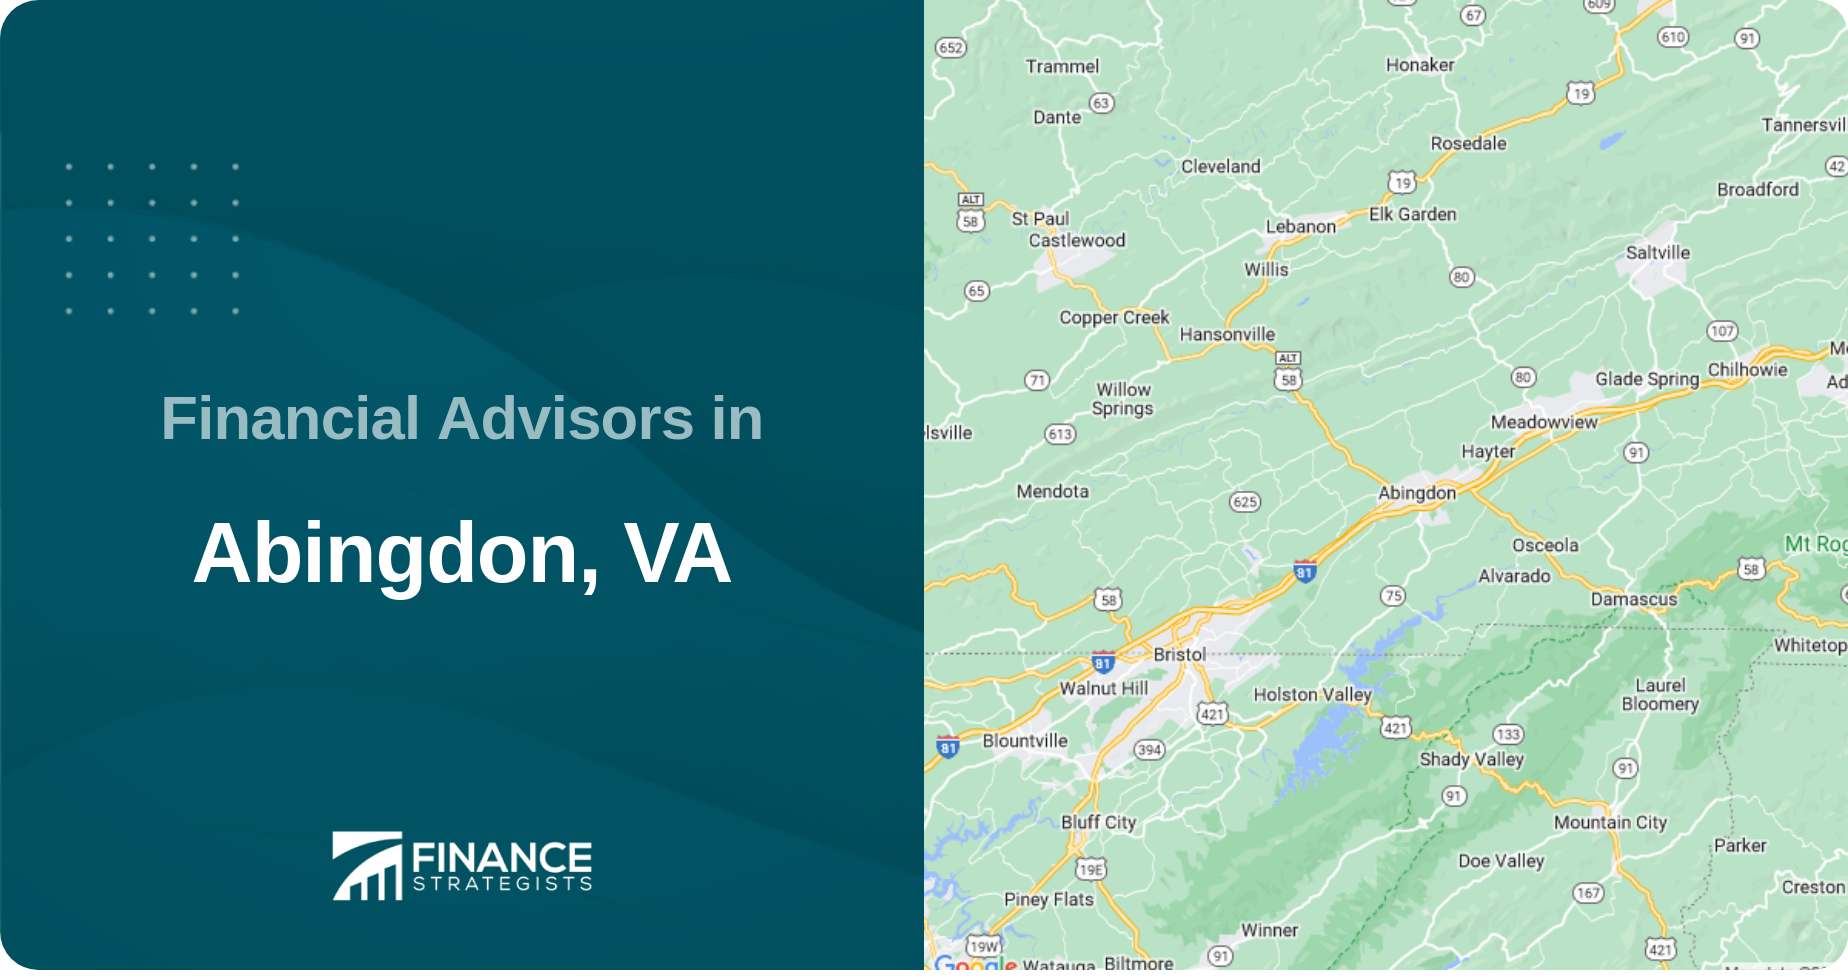 Financial Advisors in Abingdon, VA